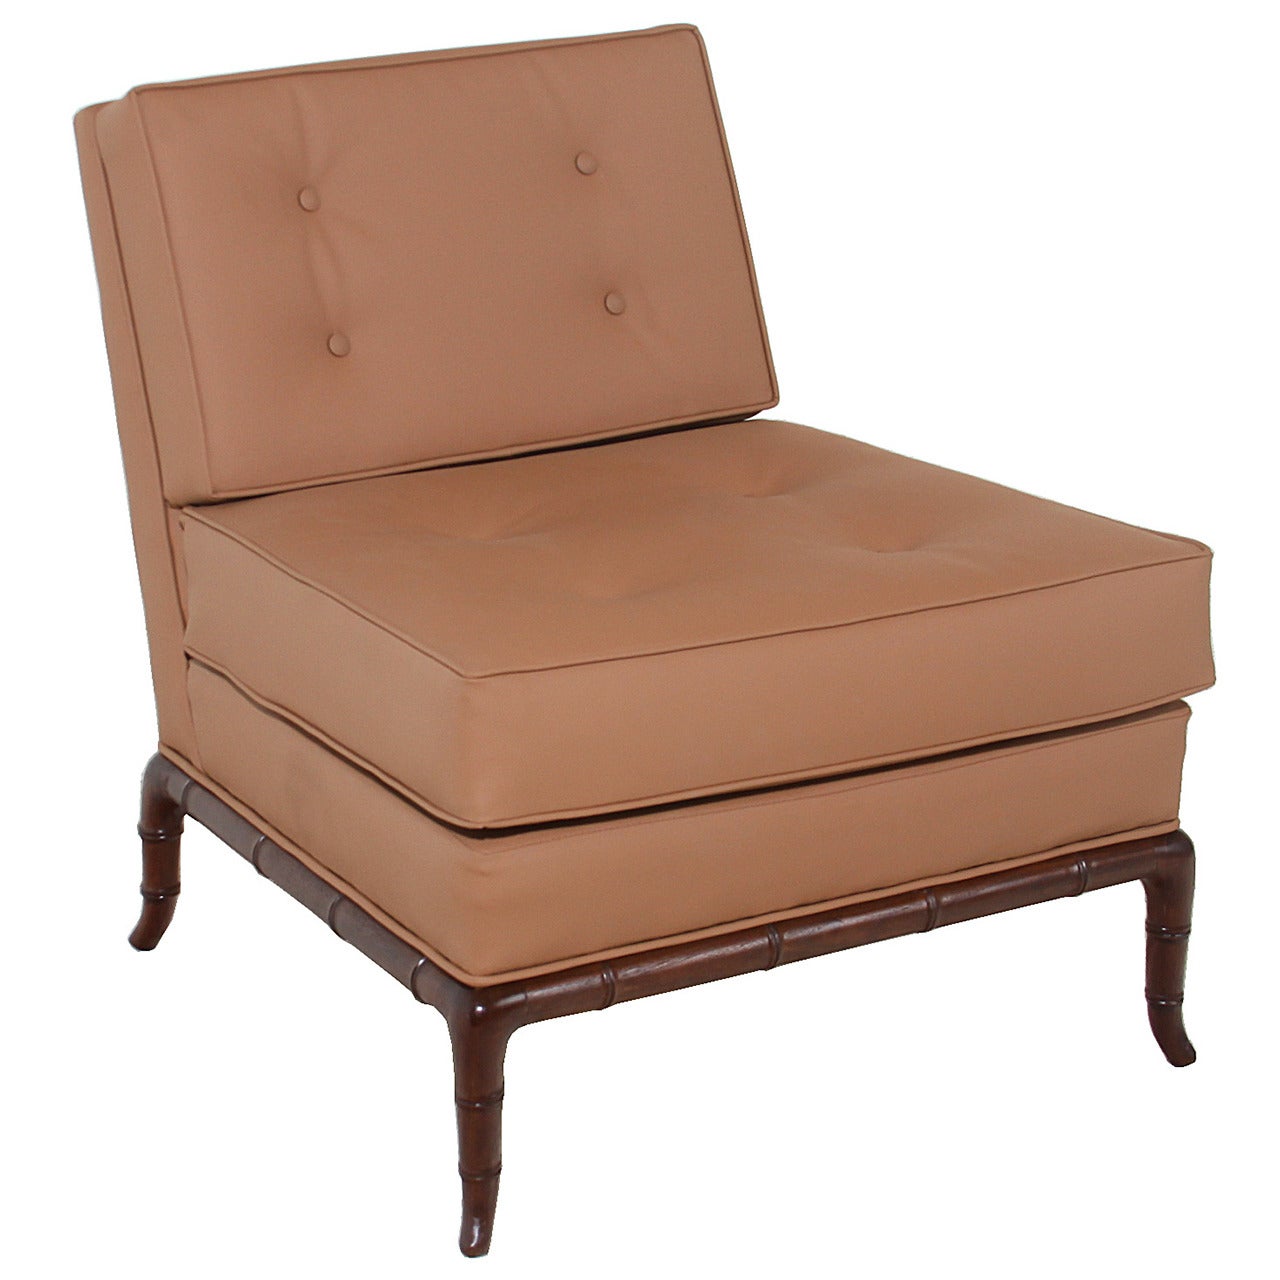 T.H. Robsjohn-Gibbings Iconic Slipper Chair For Sale